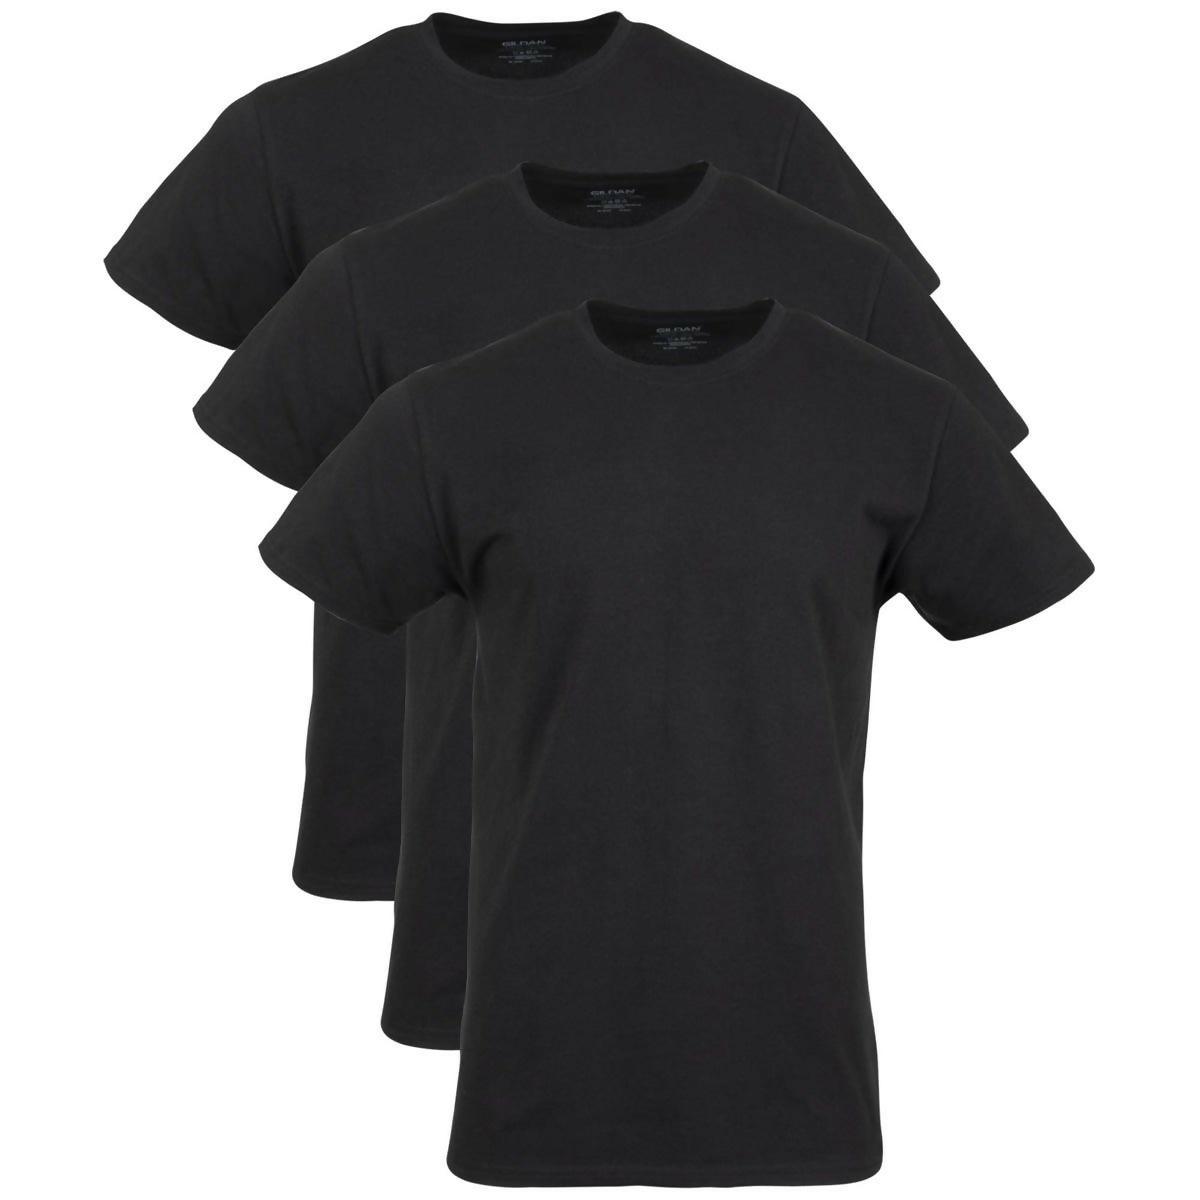 Khanani's T Shirt for Men Cotton Crew Neck Premium Basic Tshirts for men Pack of 3 - ValueBox